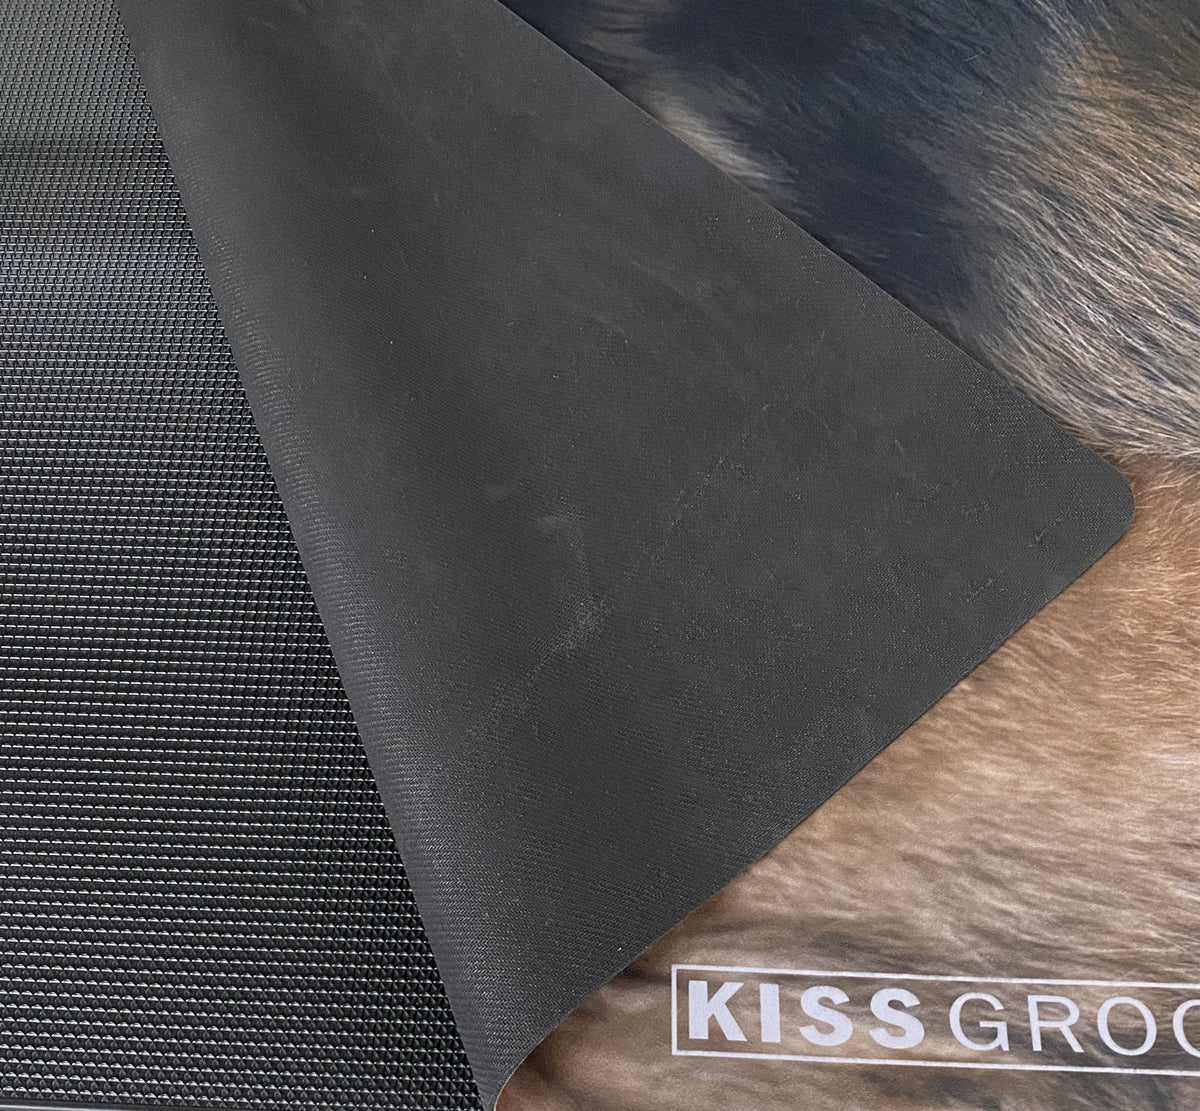 พรมปูโต๊ะกันลื่น Kiss Grooming ขนาด 60 x 40 cm. สีดำ